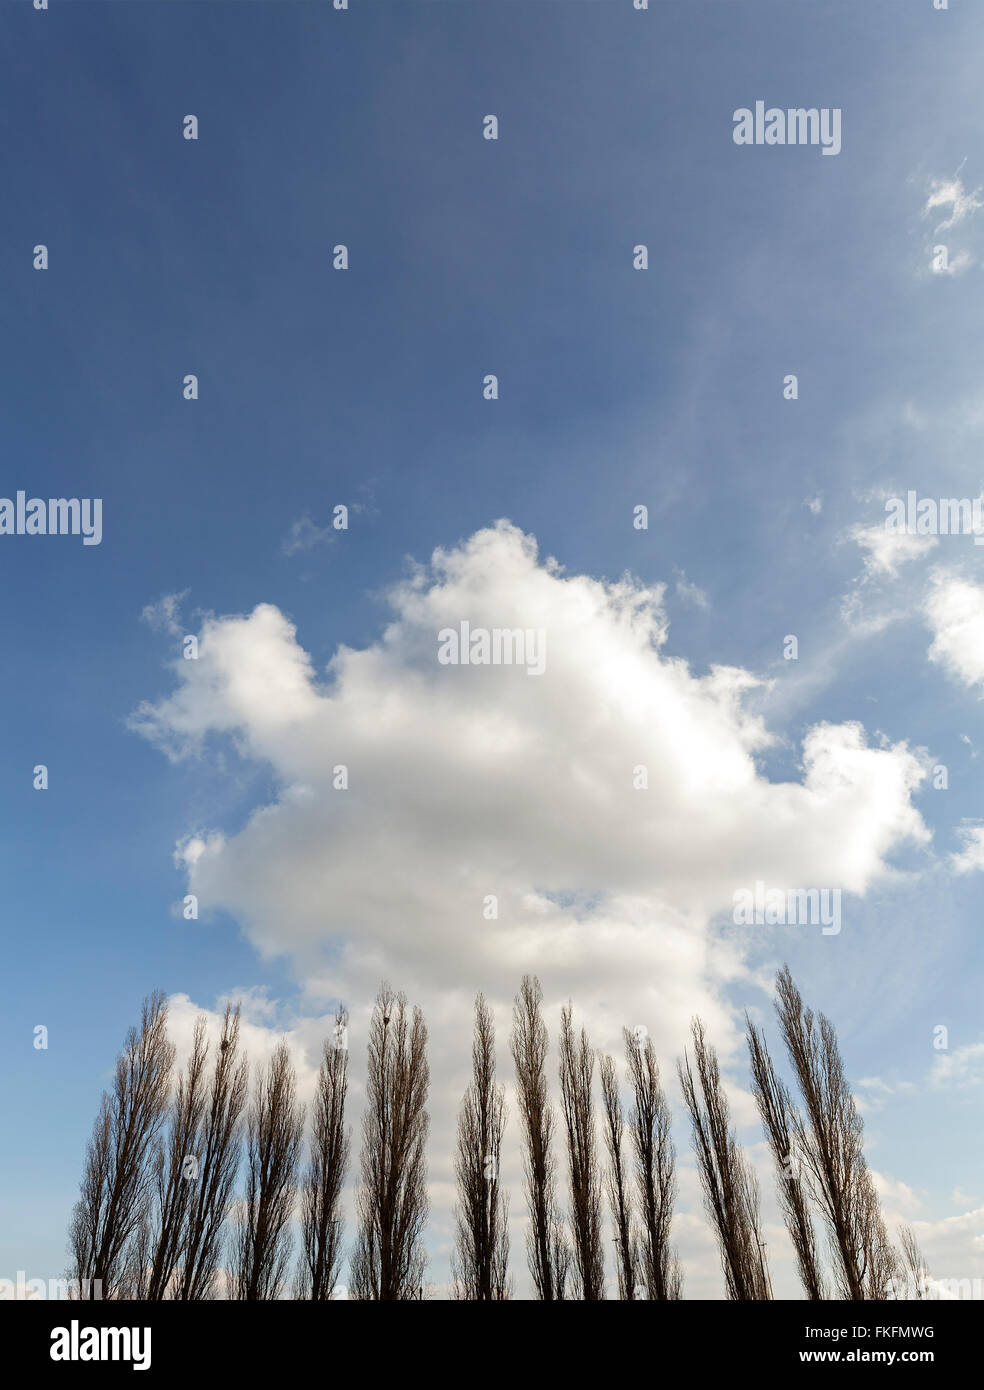 Sagome di pioppi contro nuvoloso cielo blu, copia dello spazio. Foto Stock